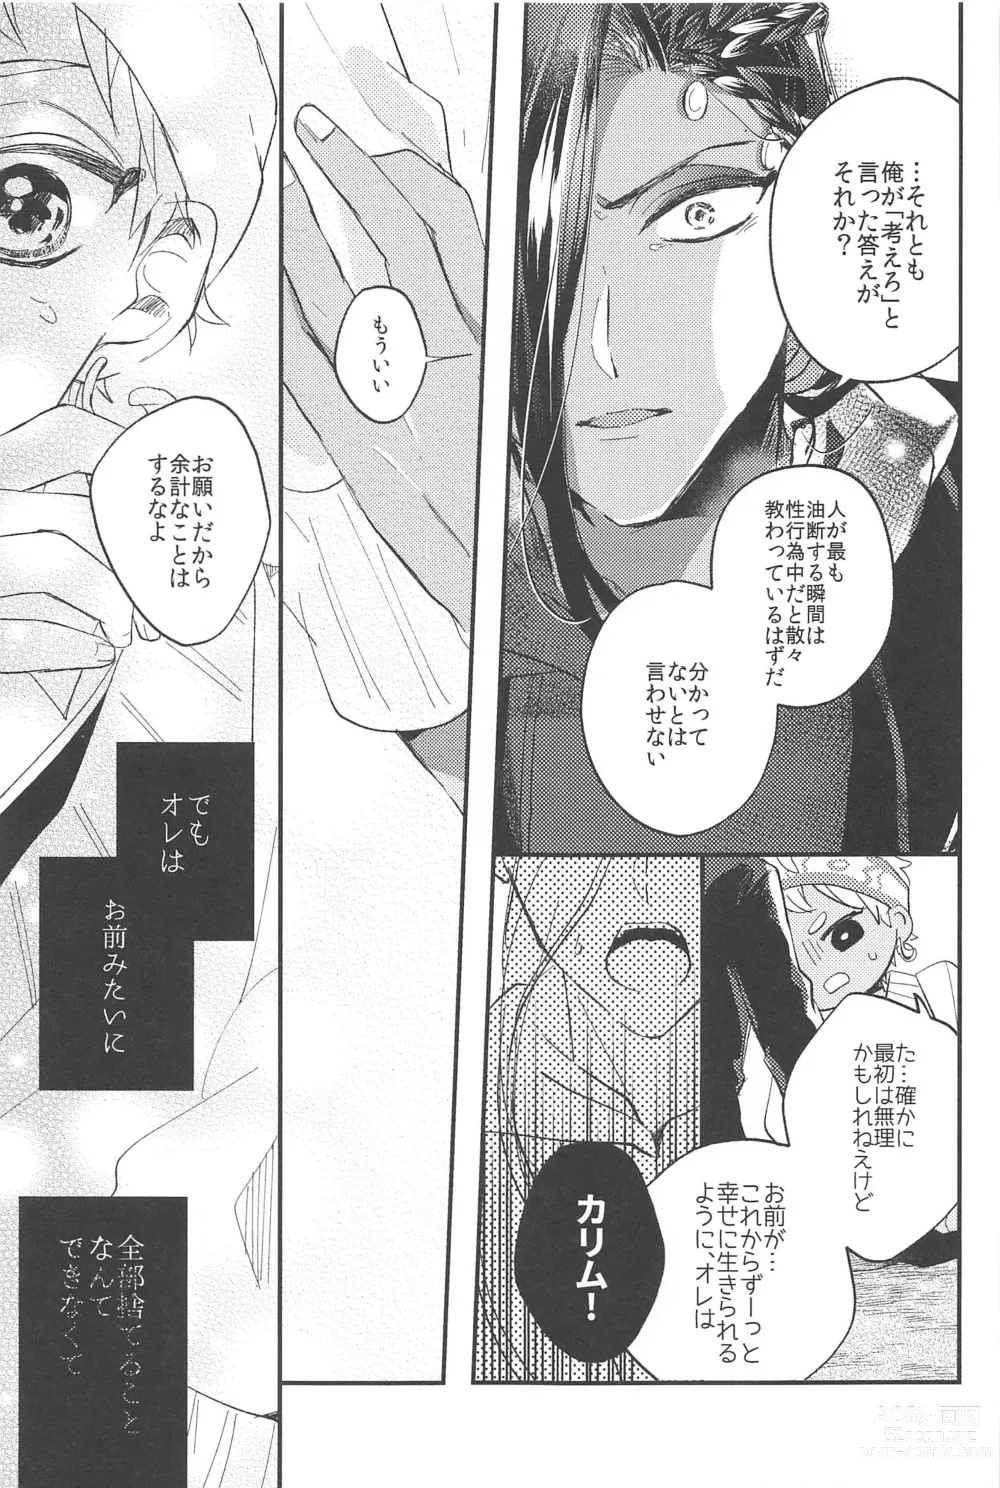 Page 26 of doujinshi Kantan dakara Muzukashii